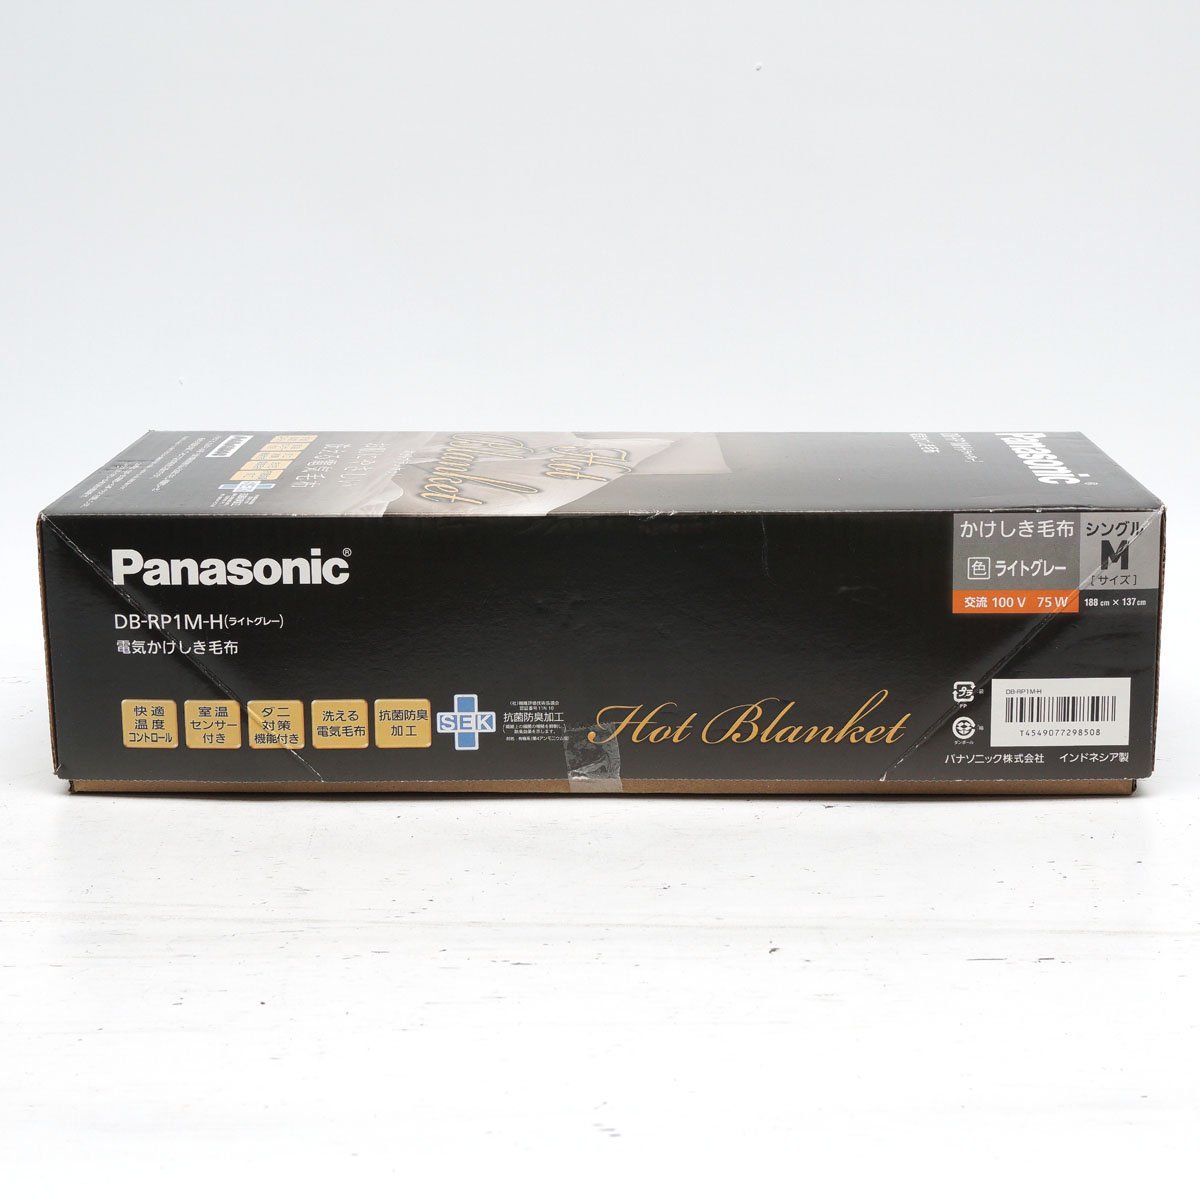 【未使用】Panasonic 電気かけしき毛布 DB-RP1M シングル Mサイズ(188cmx137cm) ライトグレー ホットブランケット [H800478]_画像2